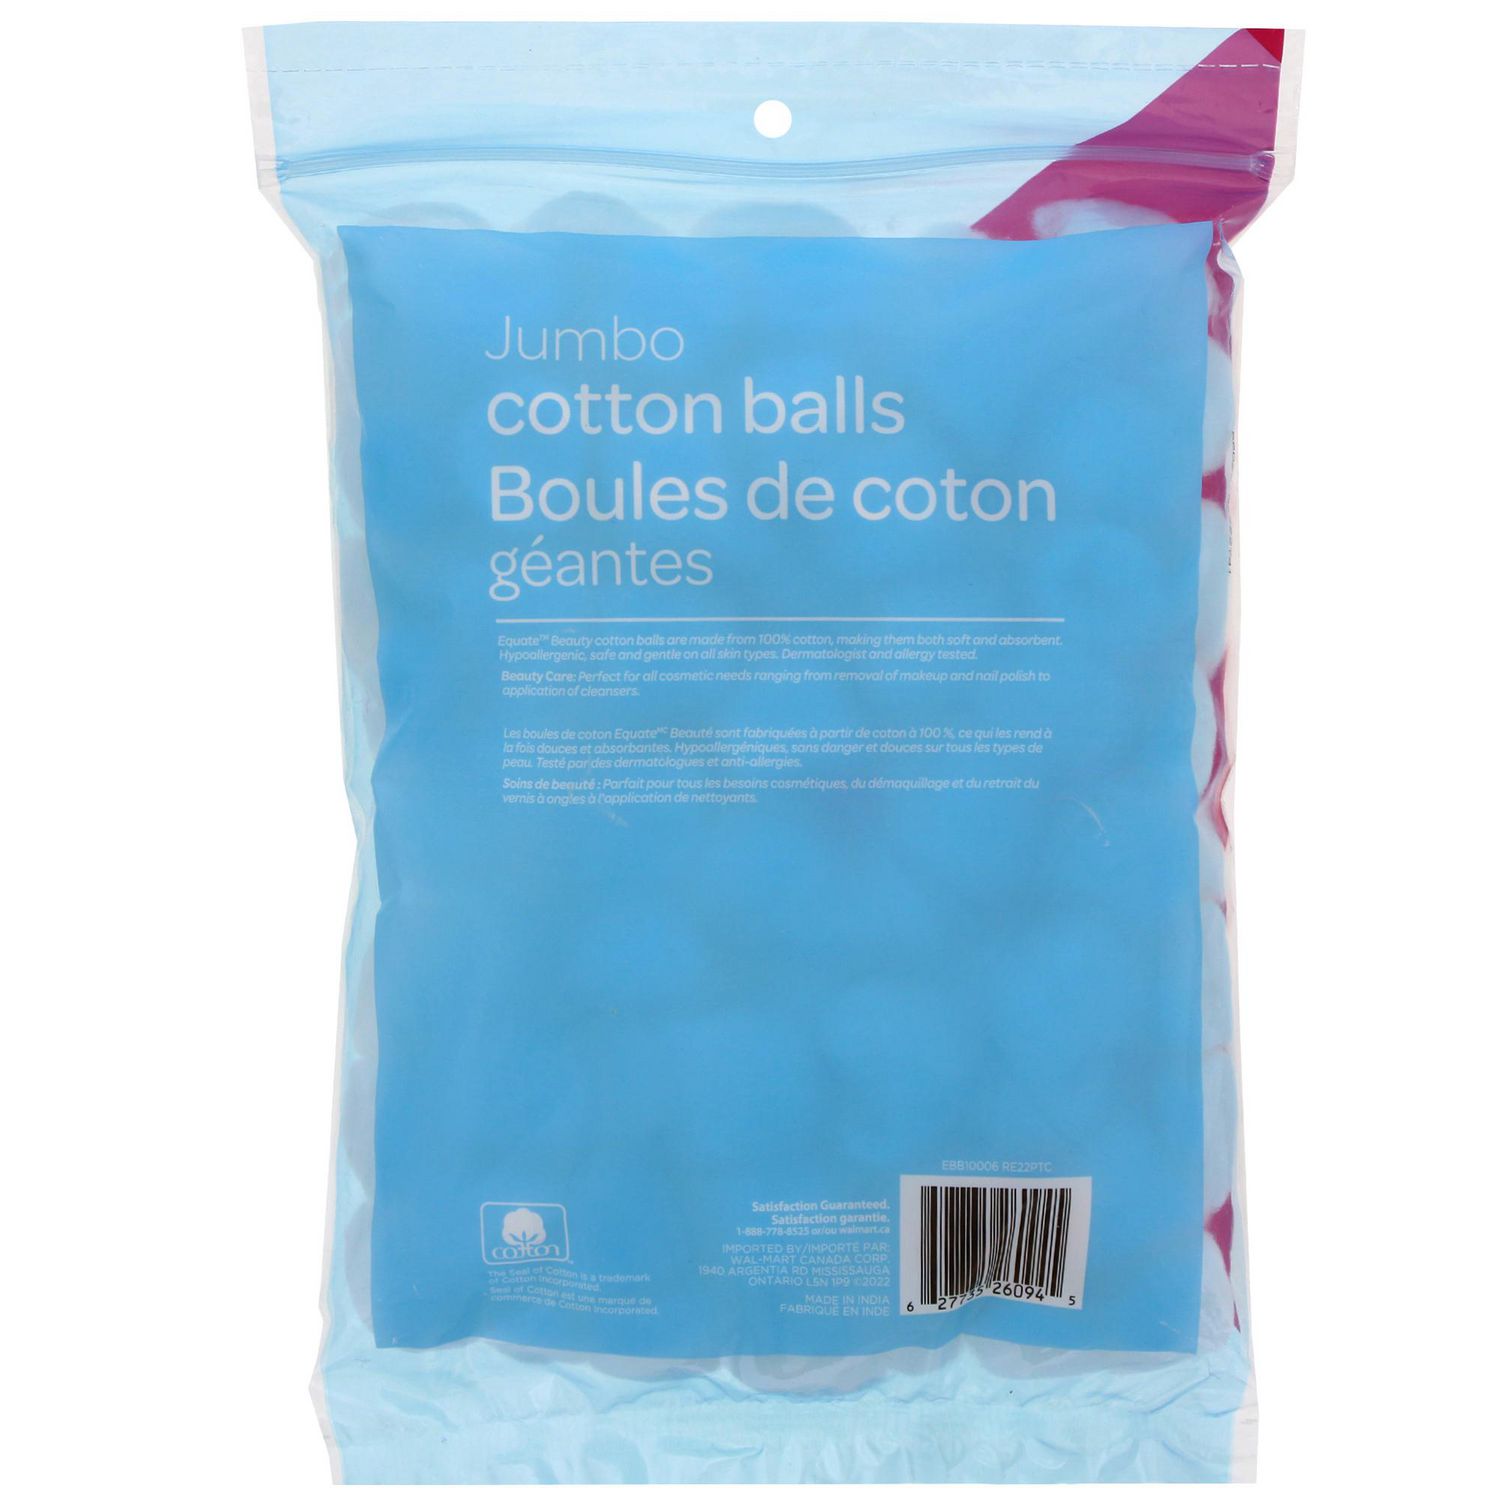 Equate Boules de coton - format regulièr 